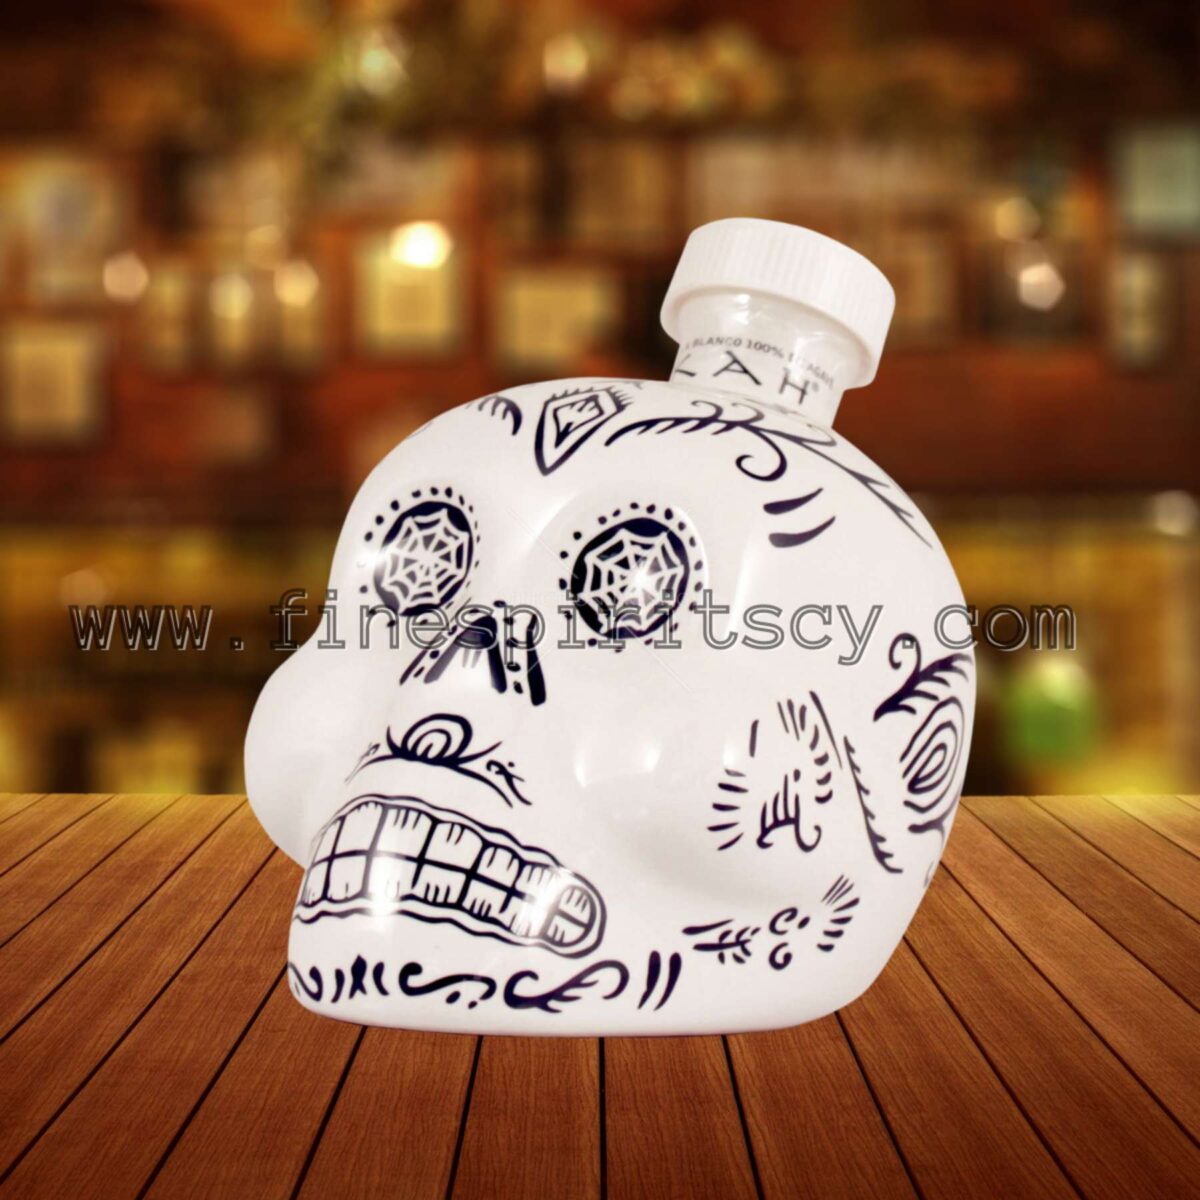 Kah Blanco Tequila 700ml 0.7L FSCY Cyprus Price Skull Bottle White